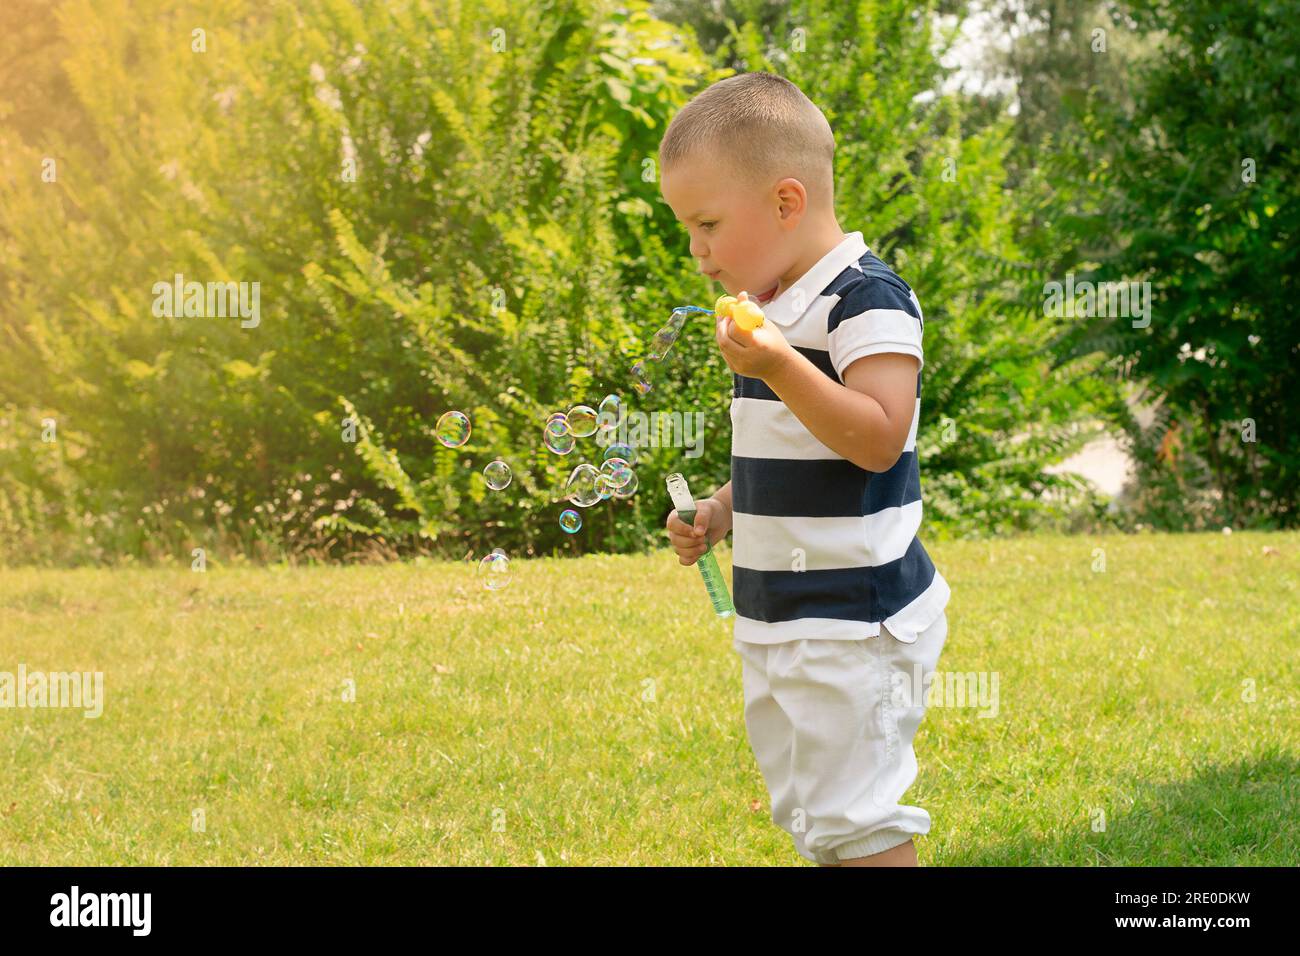 Un beau garçon caucasoïde de 4 ans, dans un T-shirt rayé, joue à l'extérieur dans un parc verdoyant en été et souffle des bulles de savon. Banque D'Images